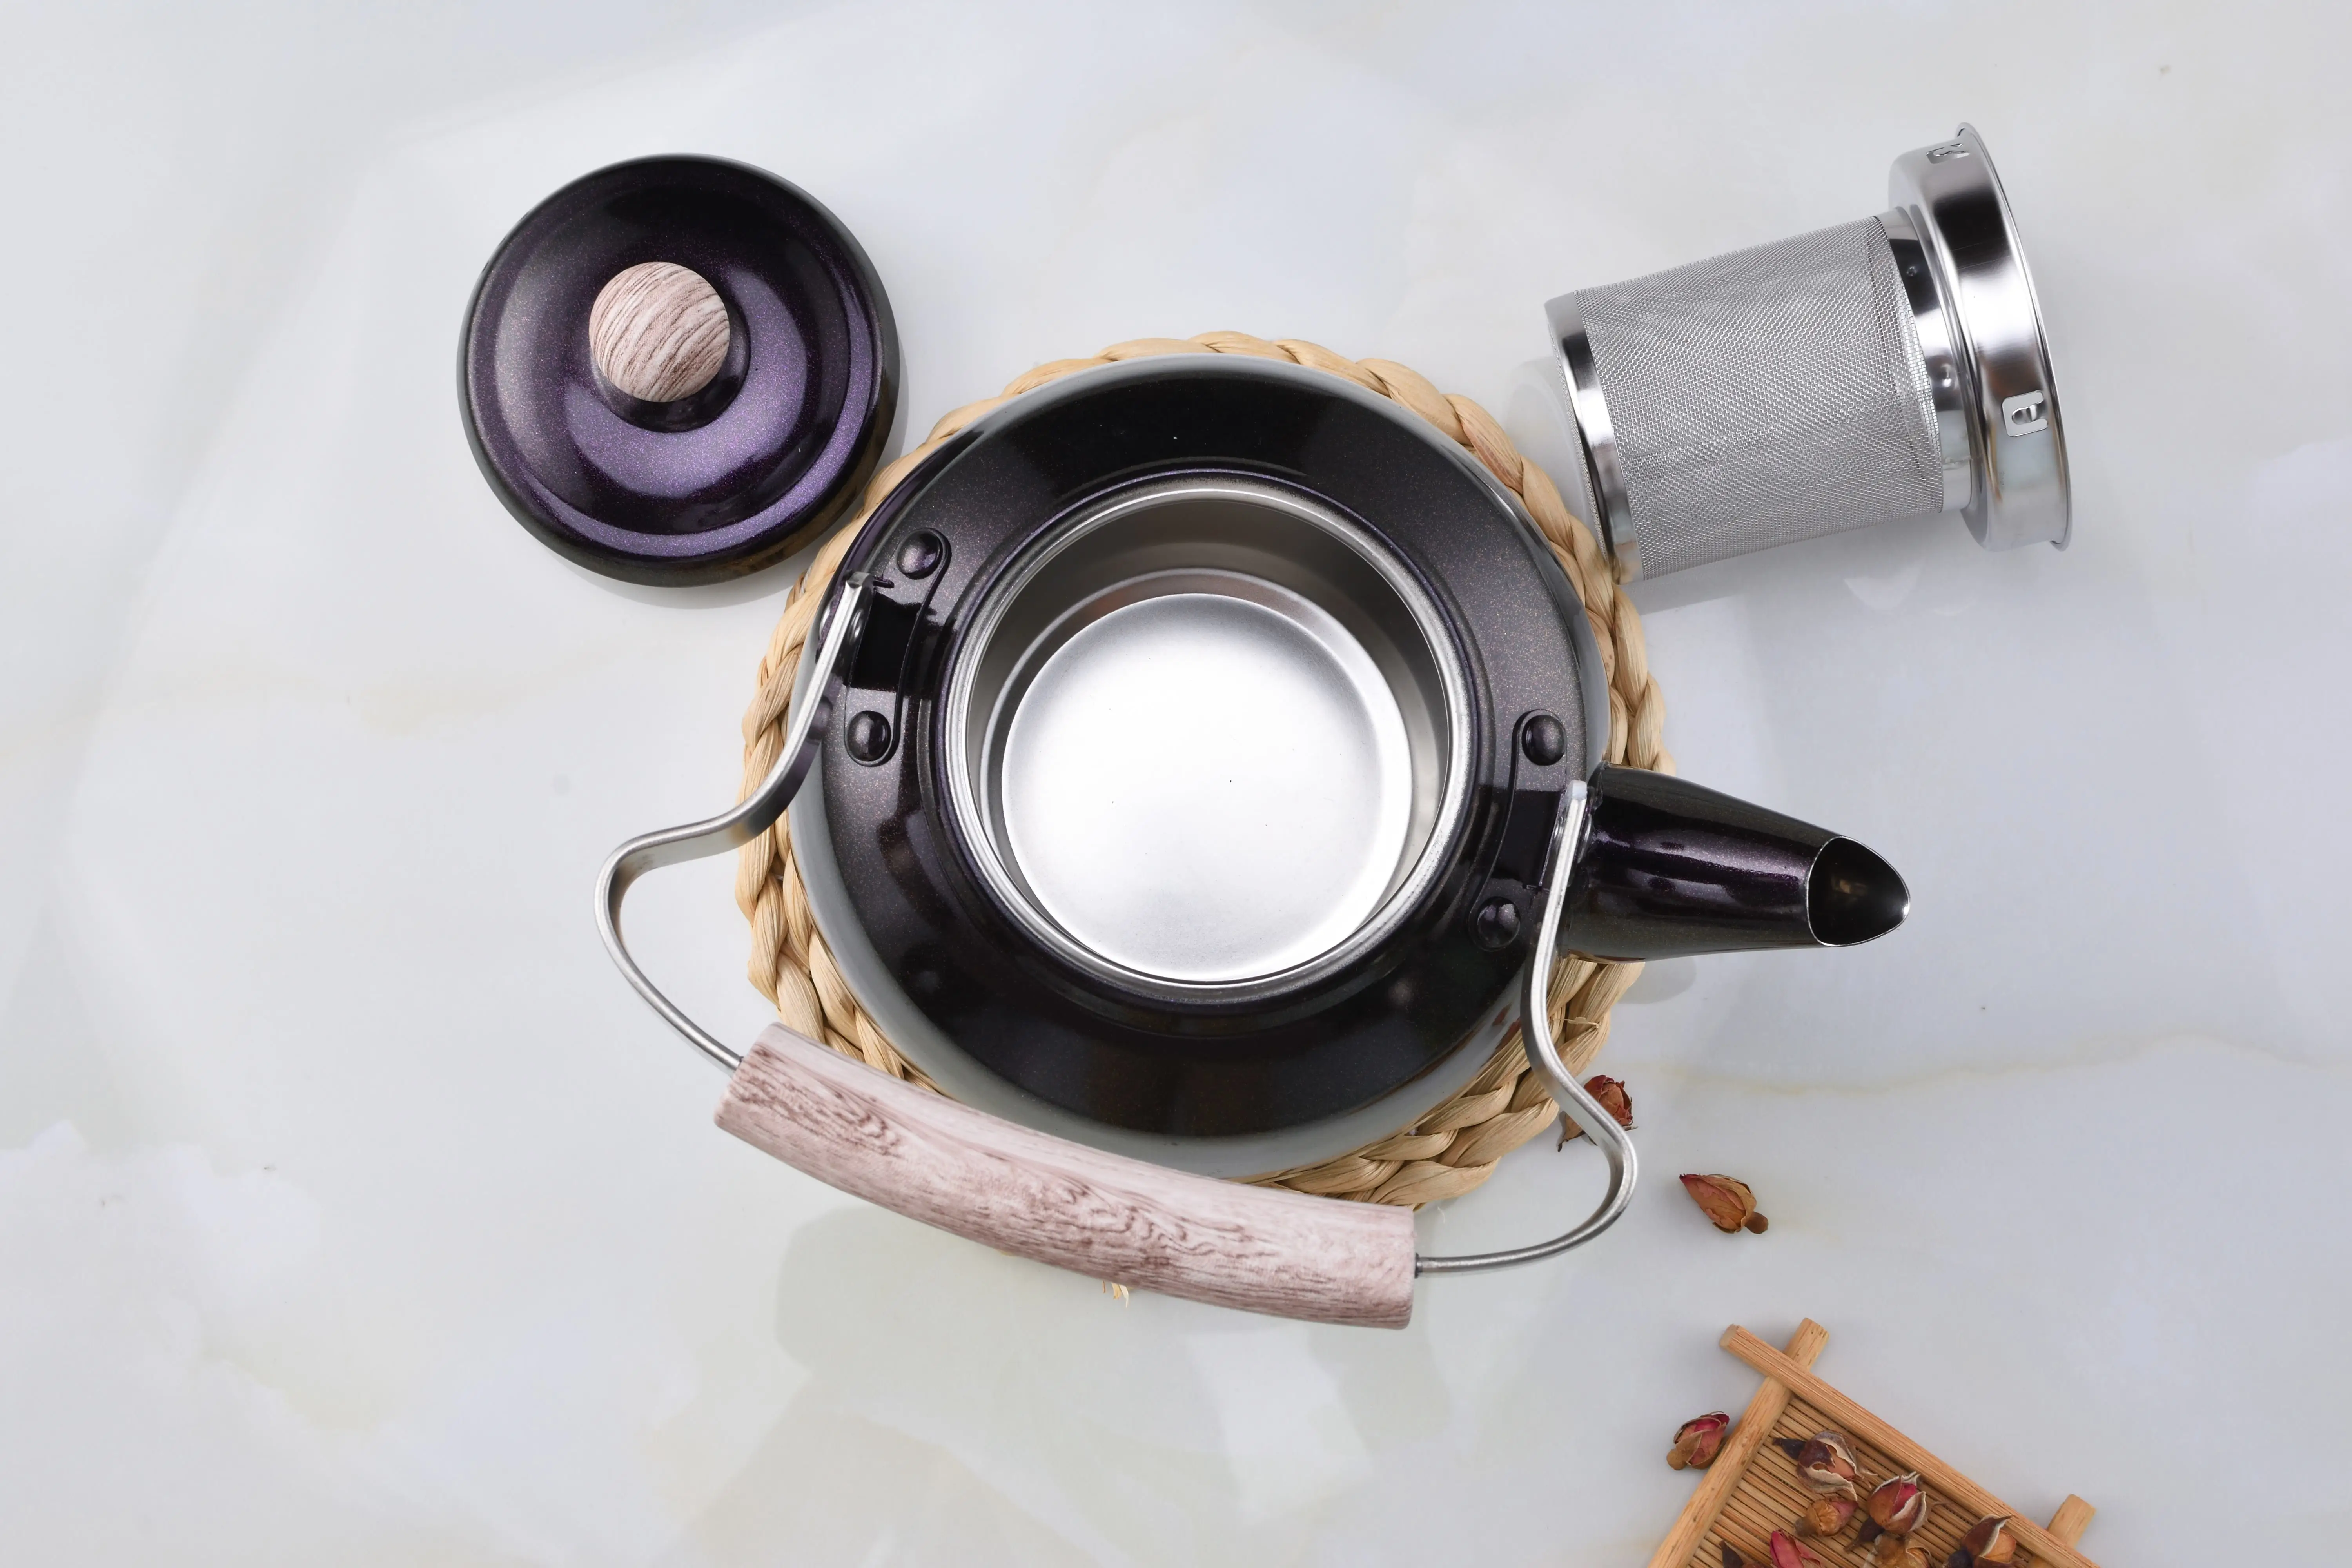 tea pot kettle Kitchen Utensils unique bottle teapot restaurant home use tea pot kettle